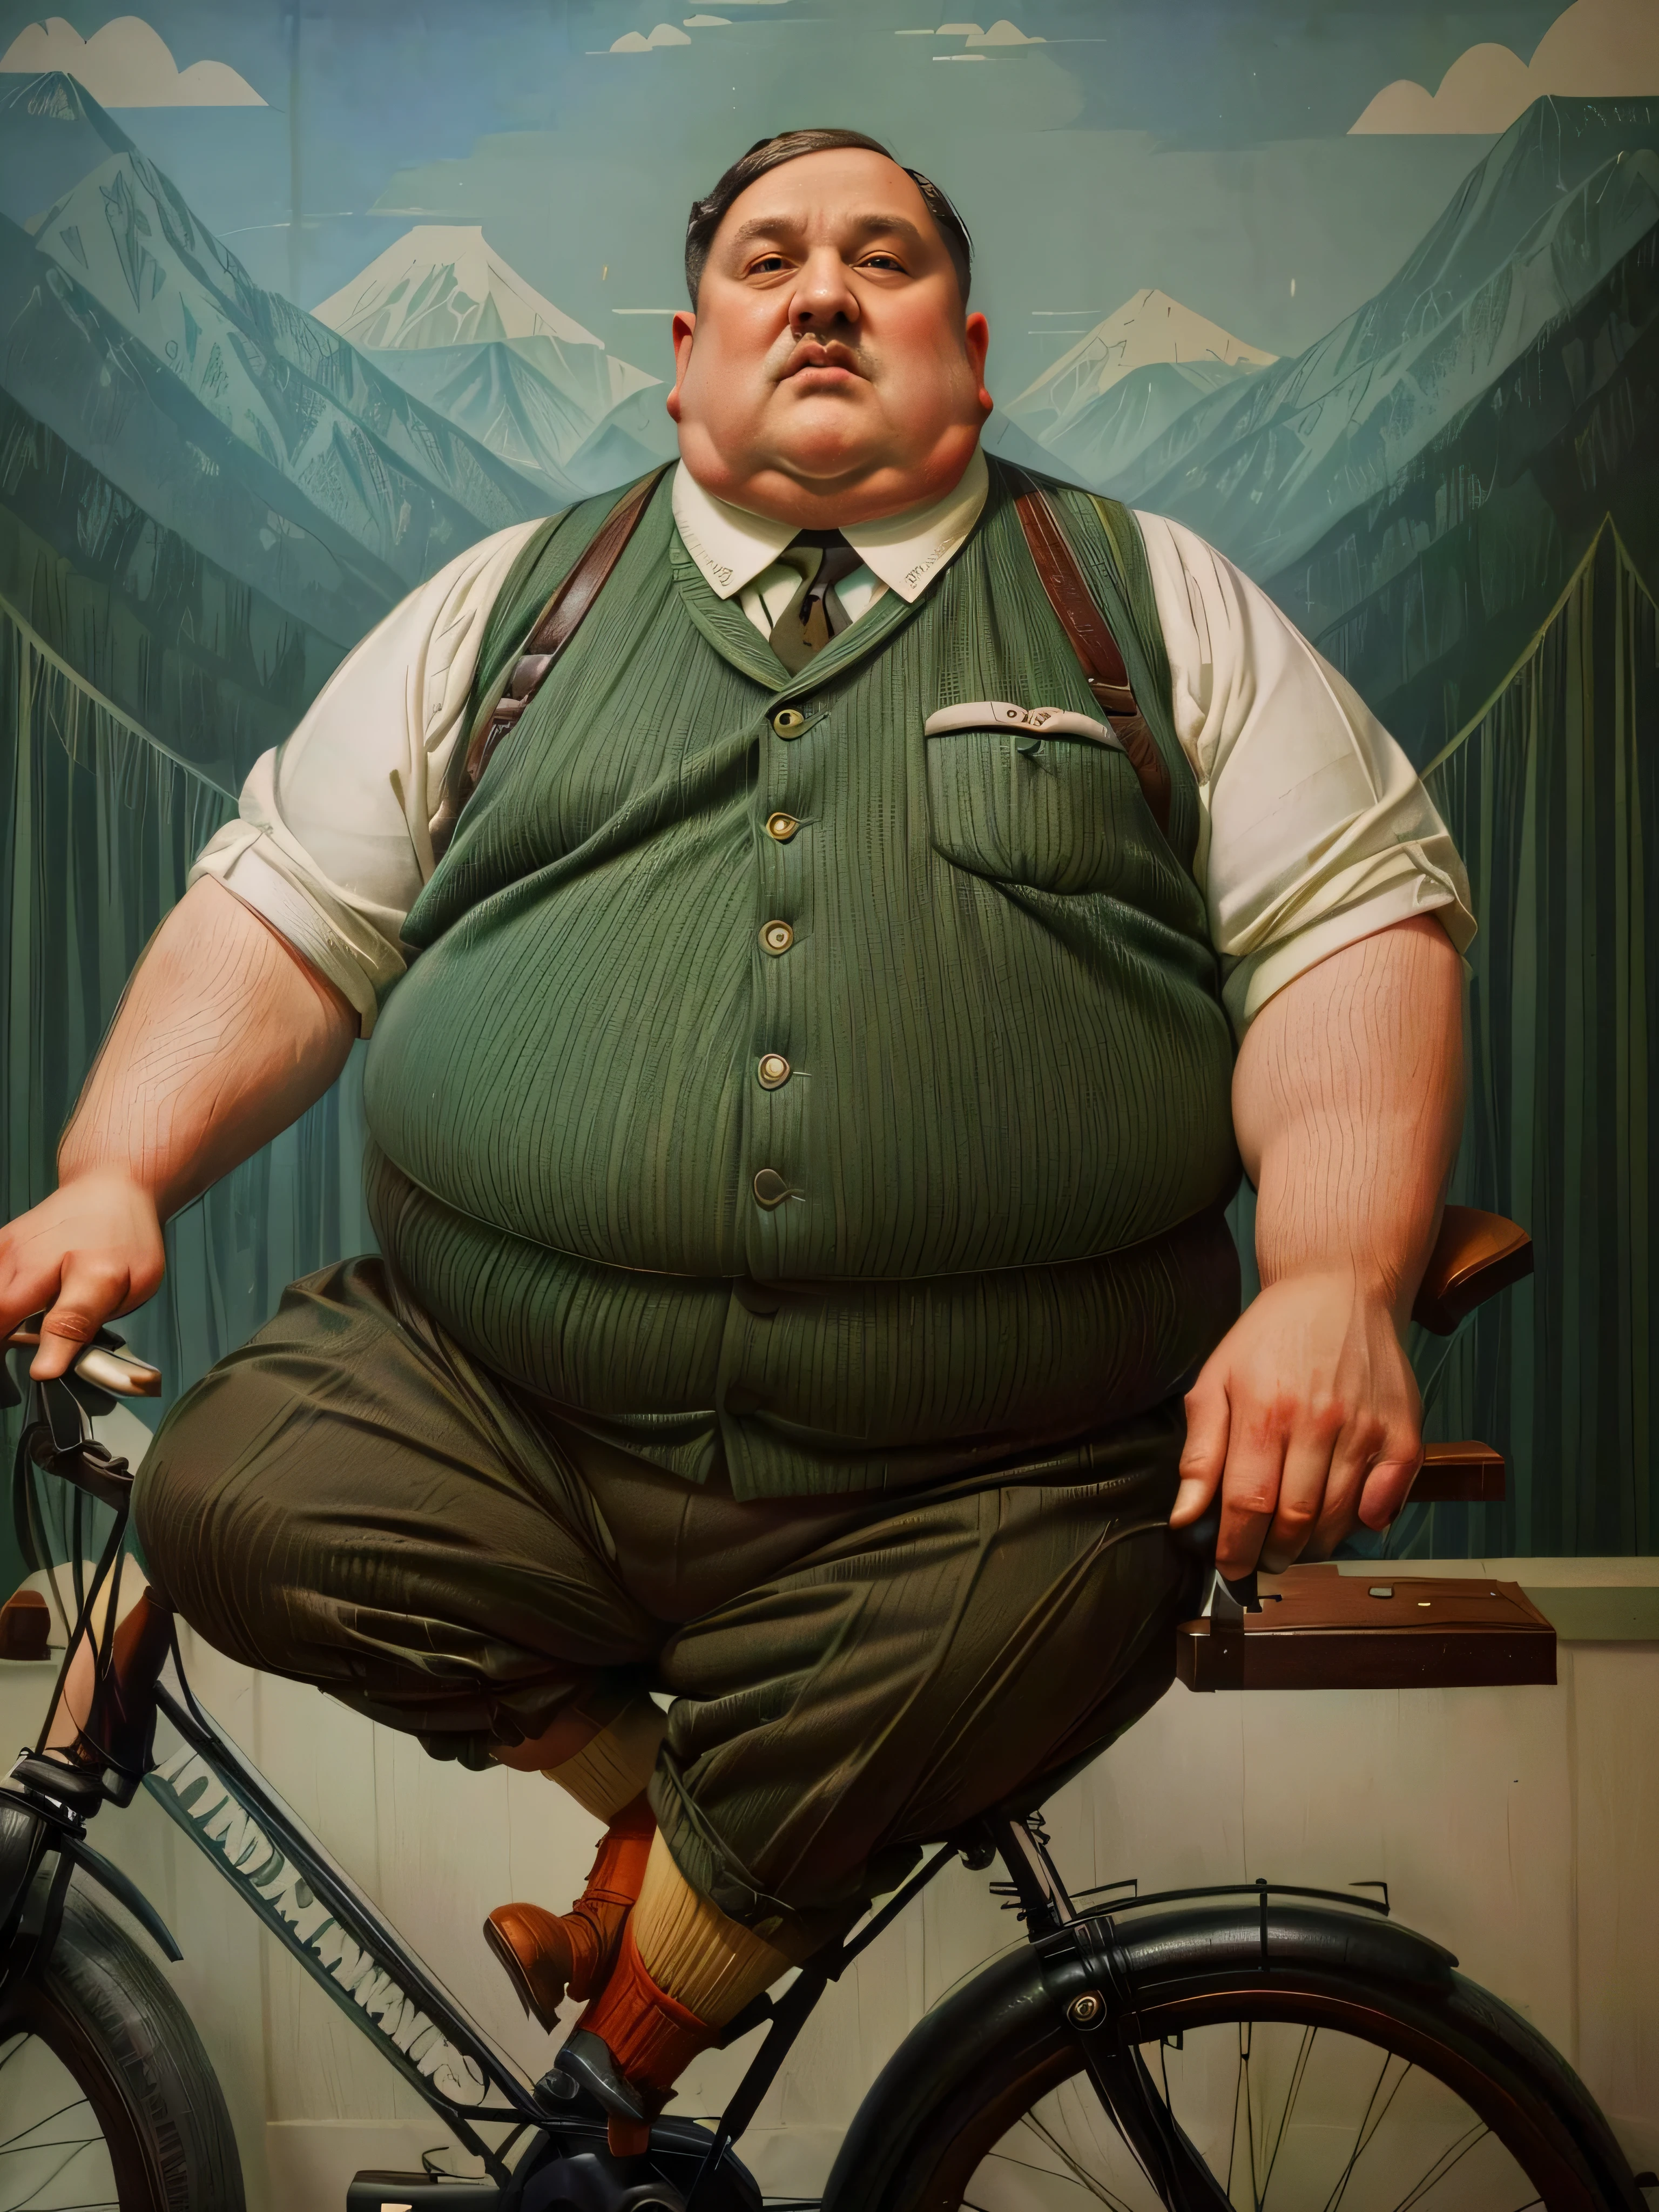 1930, Массачусетс, горная деревня. Прерафаэлит ((((85-летний)) очень толстый, 500-фунтовый тяжеловес Адольфа Гитлера), езда на велосипеде ((((повседневная одежда 1930-х годов)))) ((прическа 1930-х годов)), ((Кинематографический стиль Уэса Андерсона)), красочный. 